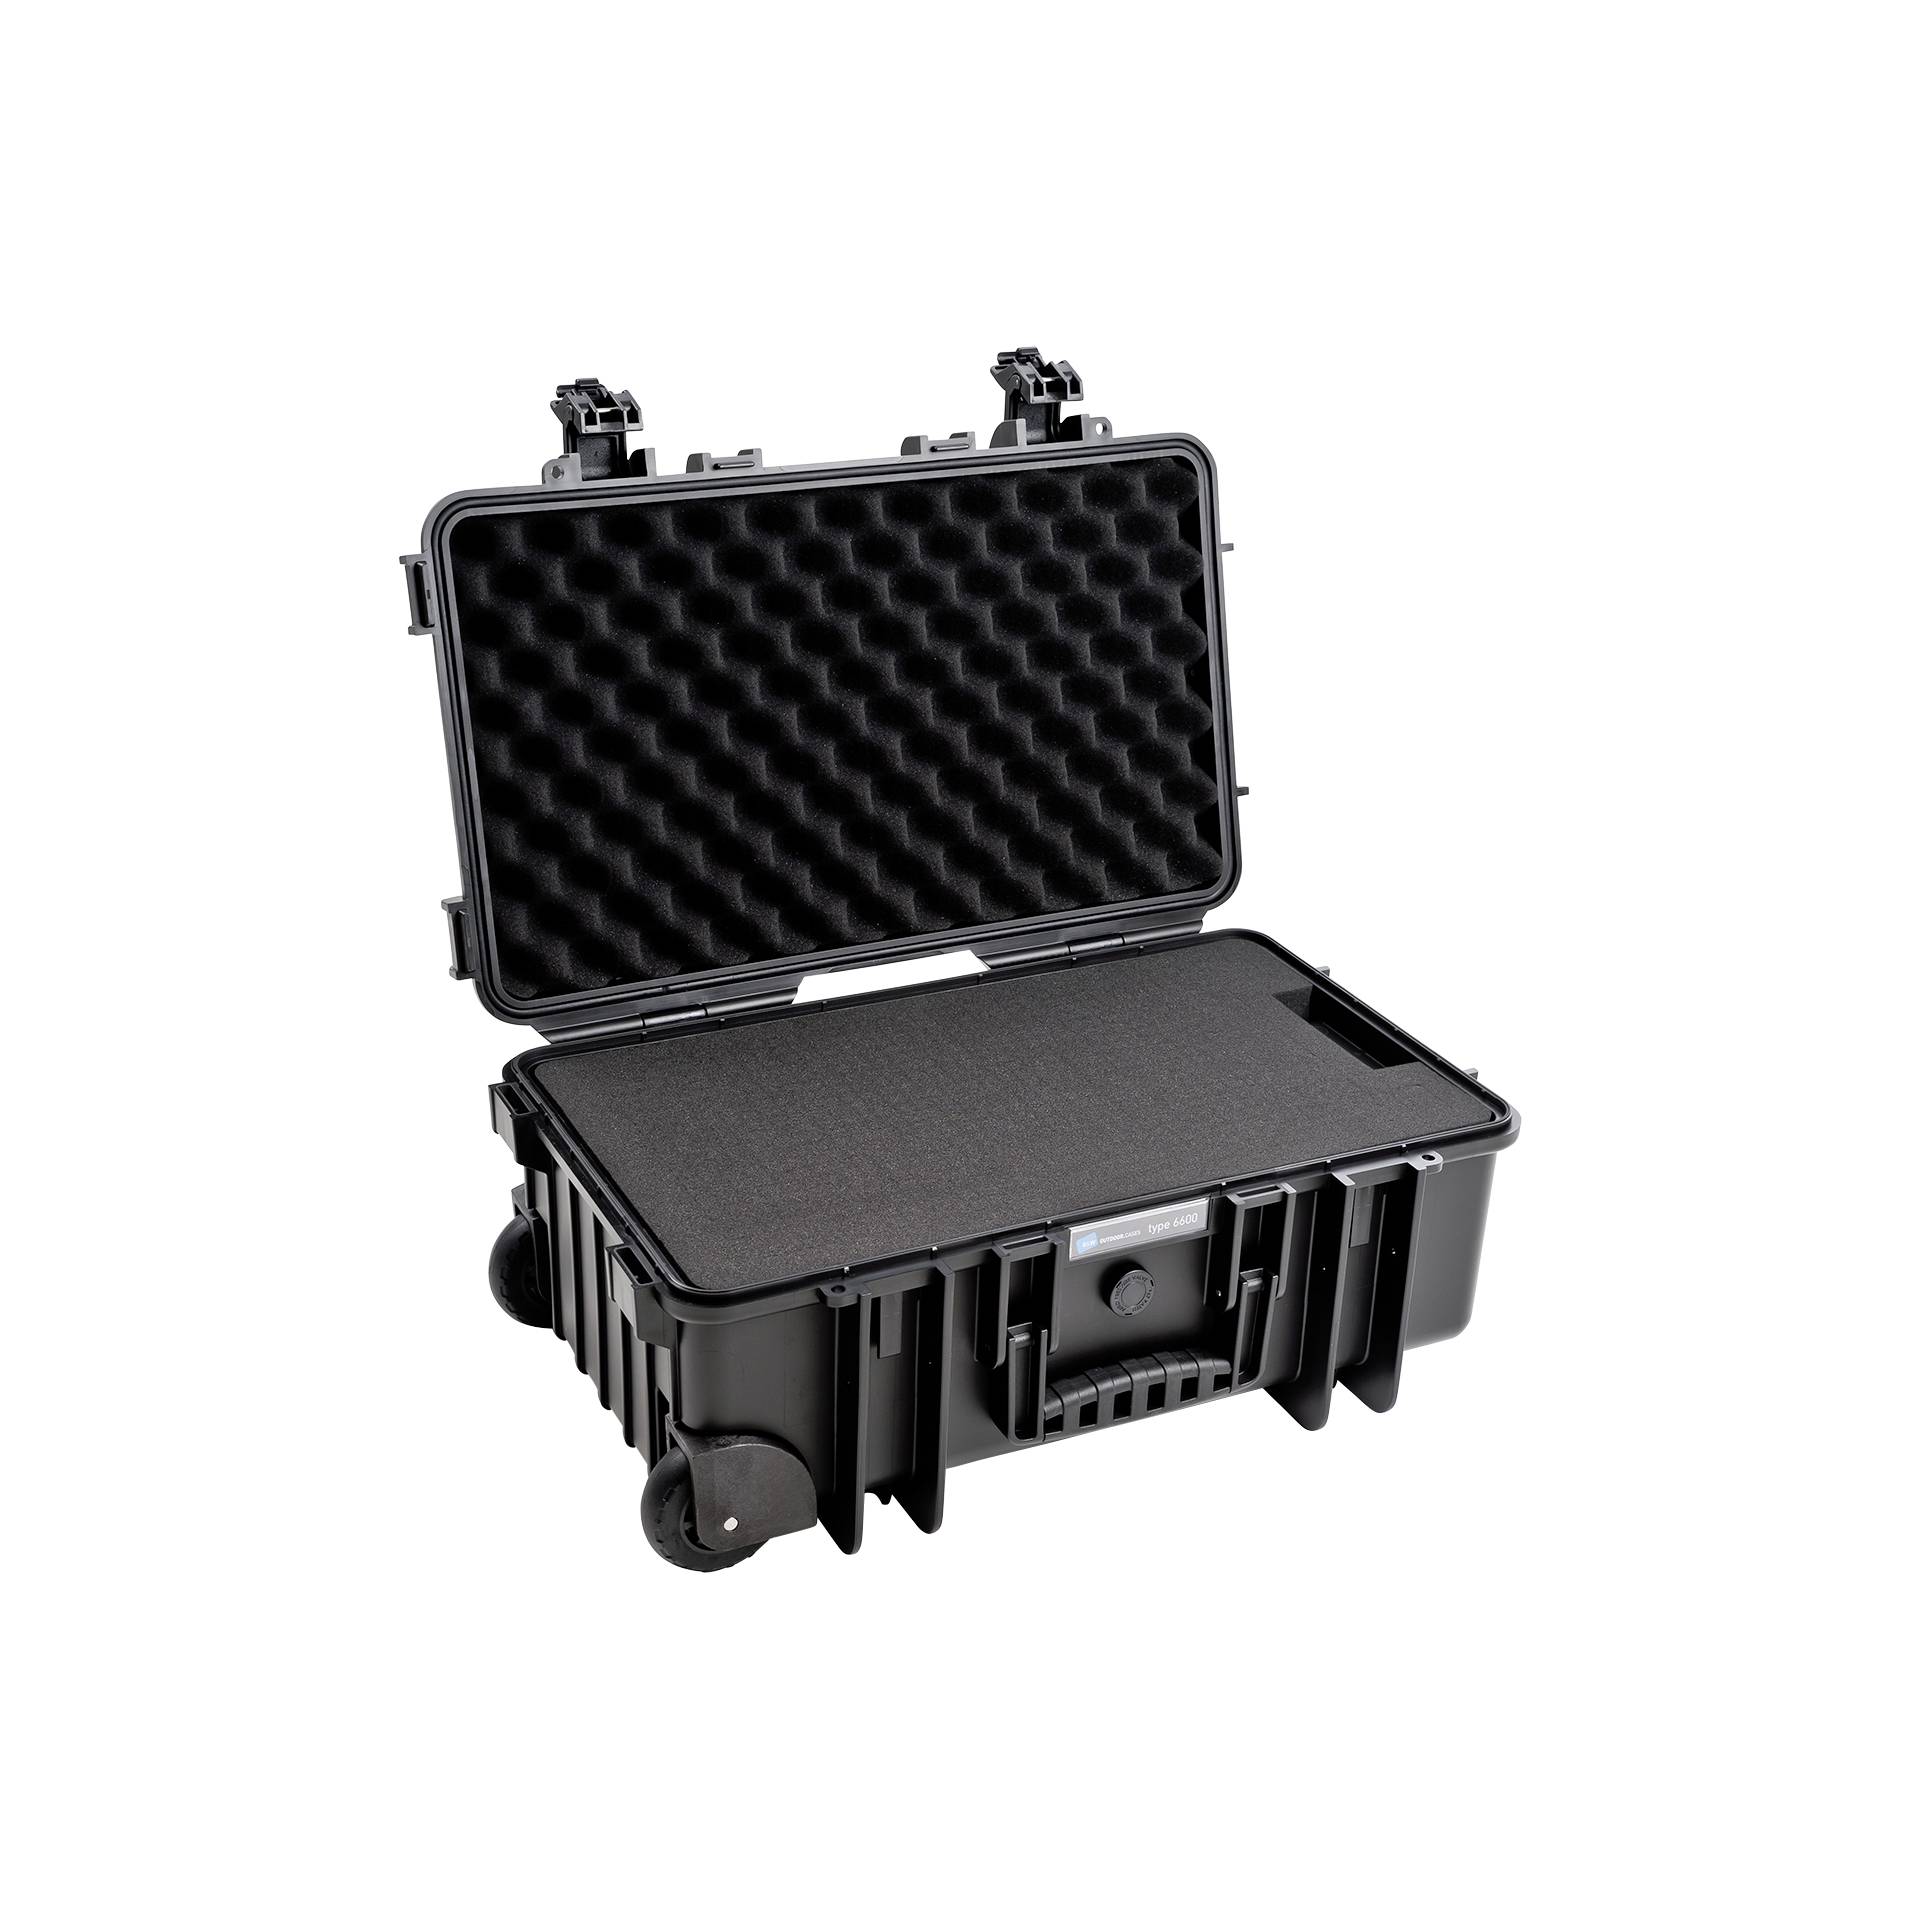 B&W Outdoor valigia tipo 6600 nero con inserto in spugna